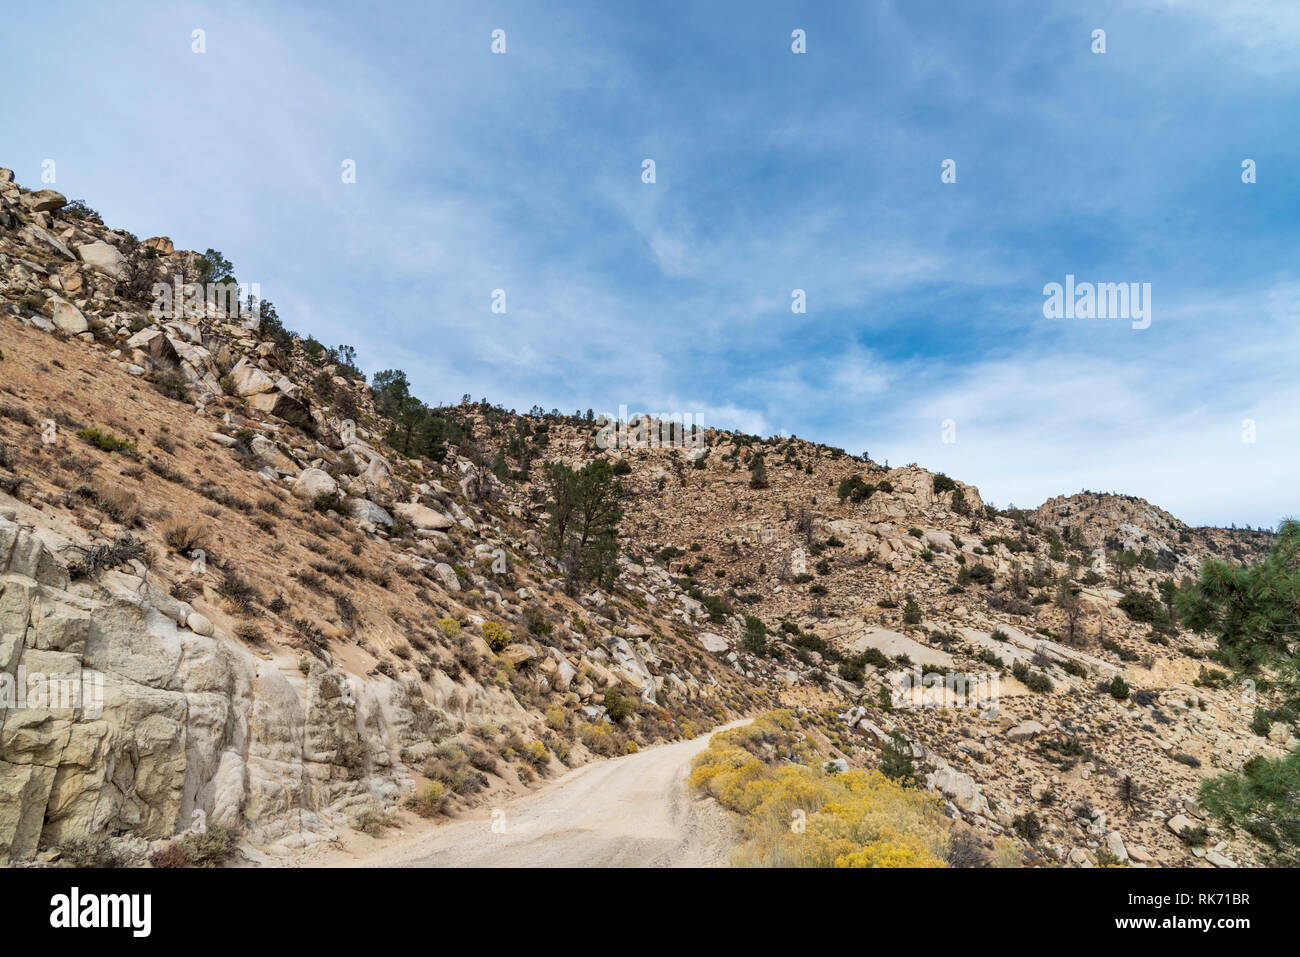 Strada sterrata che conduce attraverso delle montagne del deserto con la montagna sulla sinistra e scendere a destra sotto il cielo blu con nuvole. Foto Stock